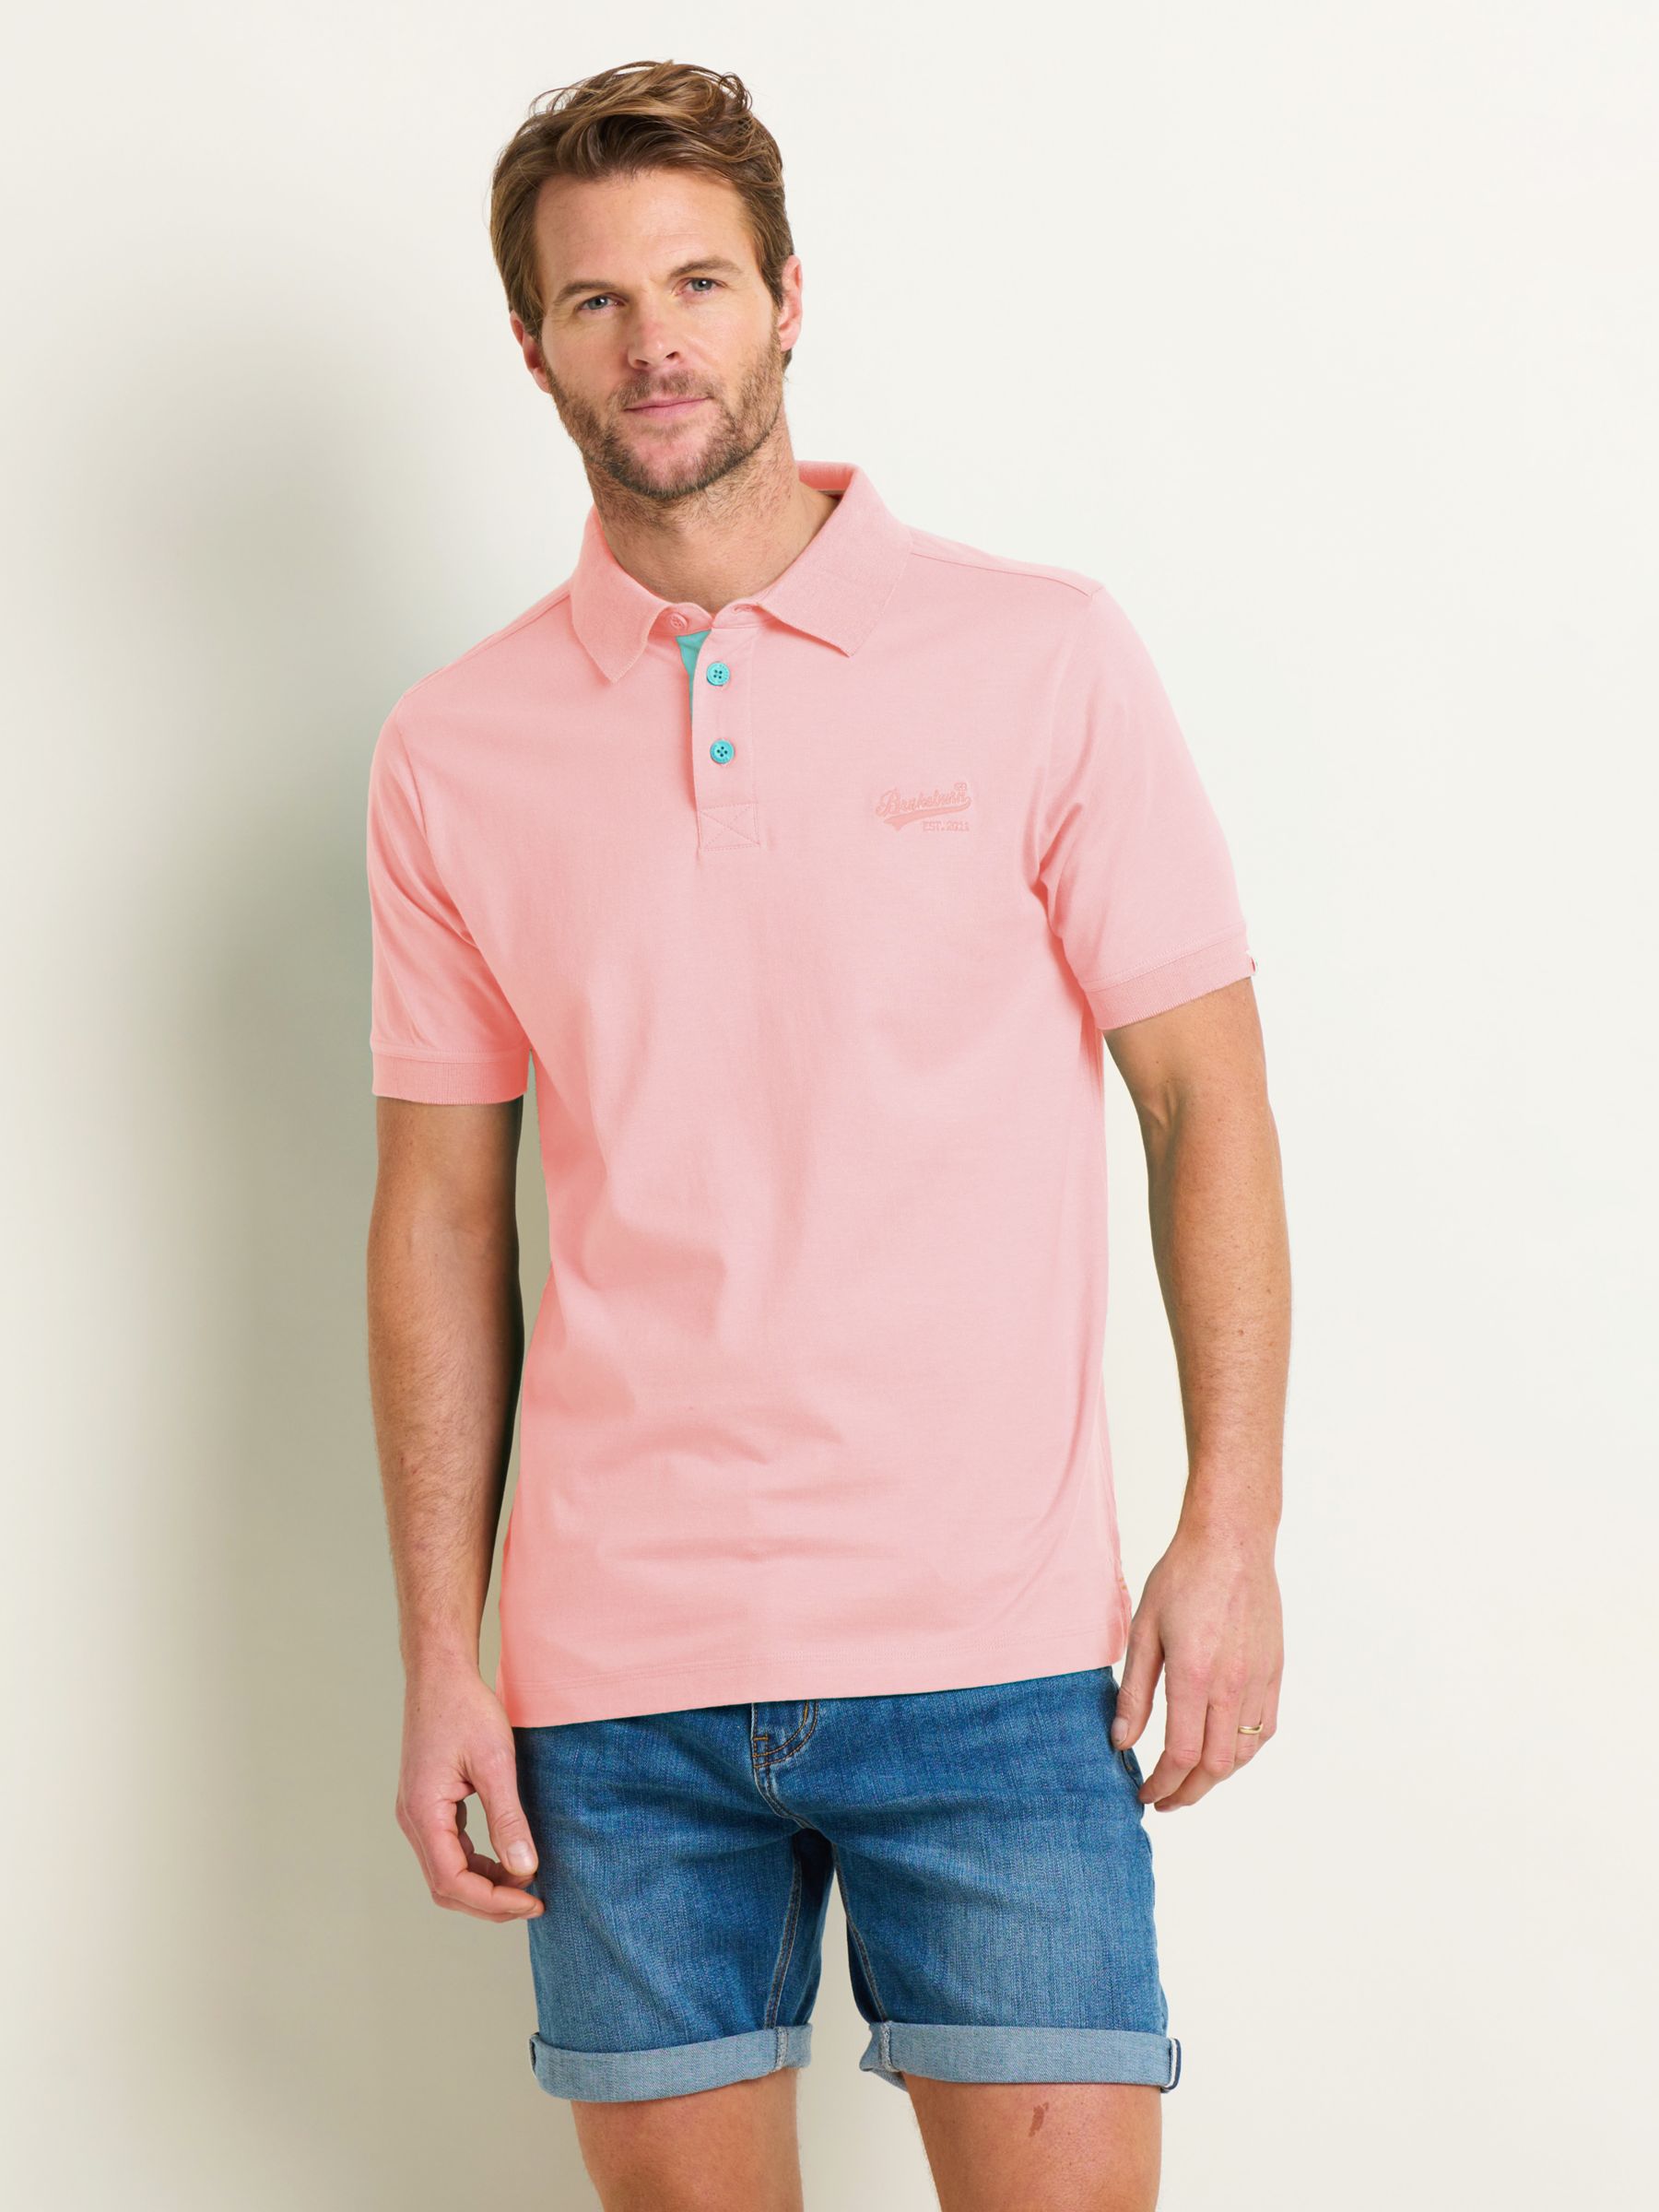 Brakeburn Plain Polo Shirt, Pink, L